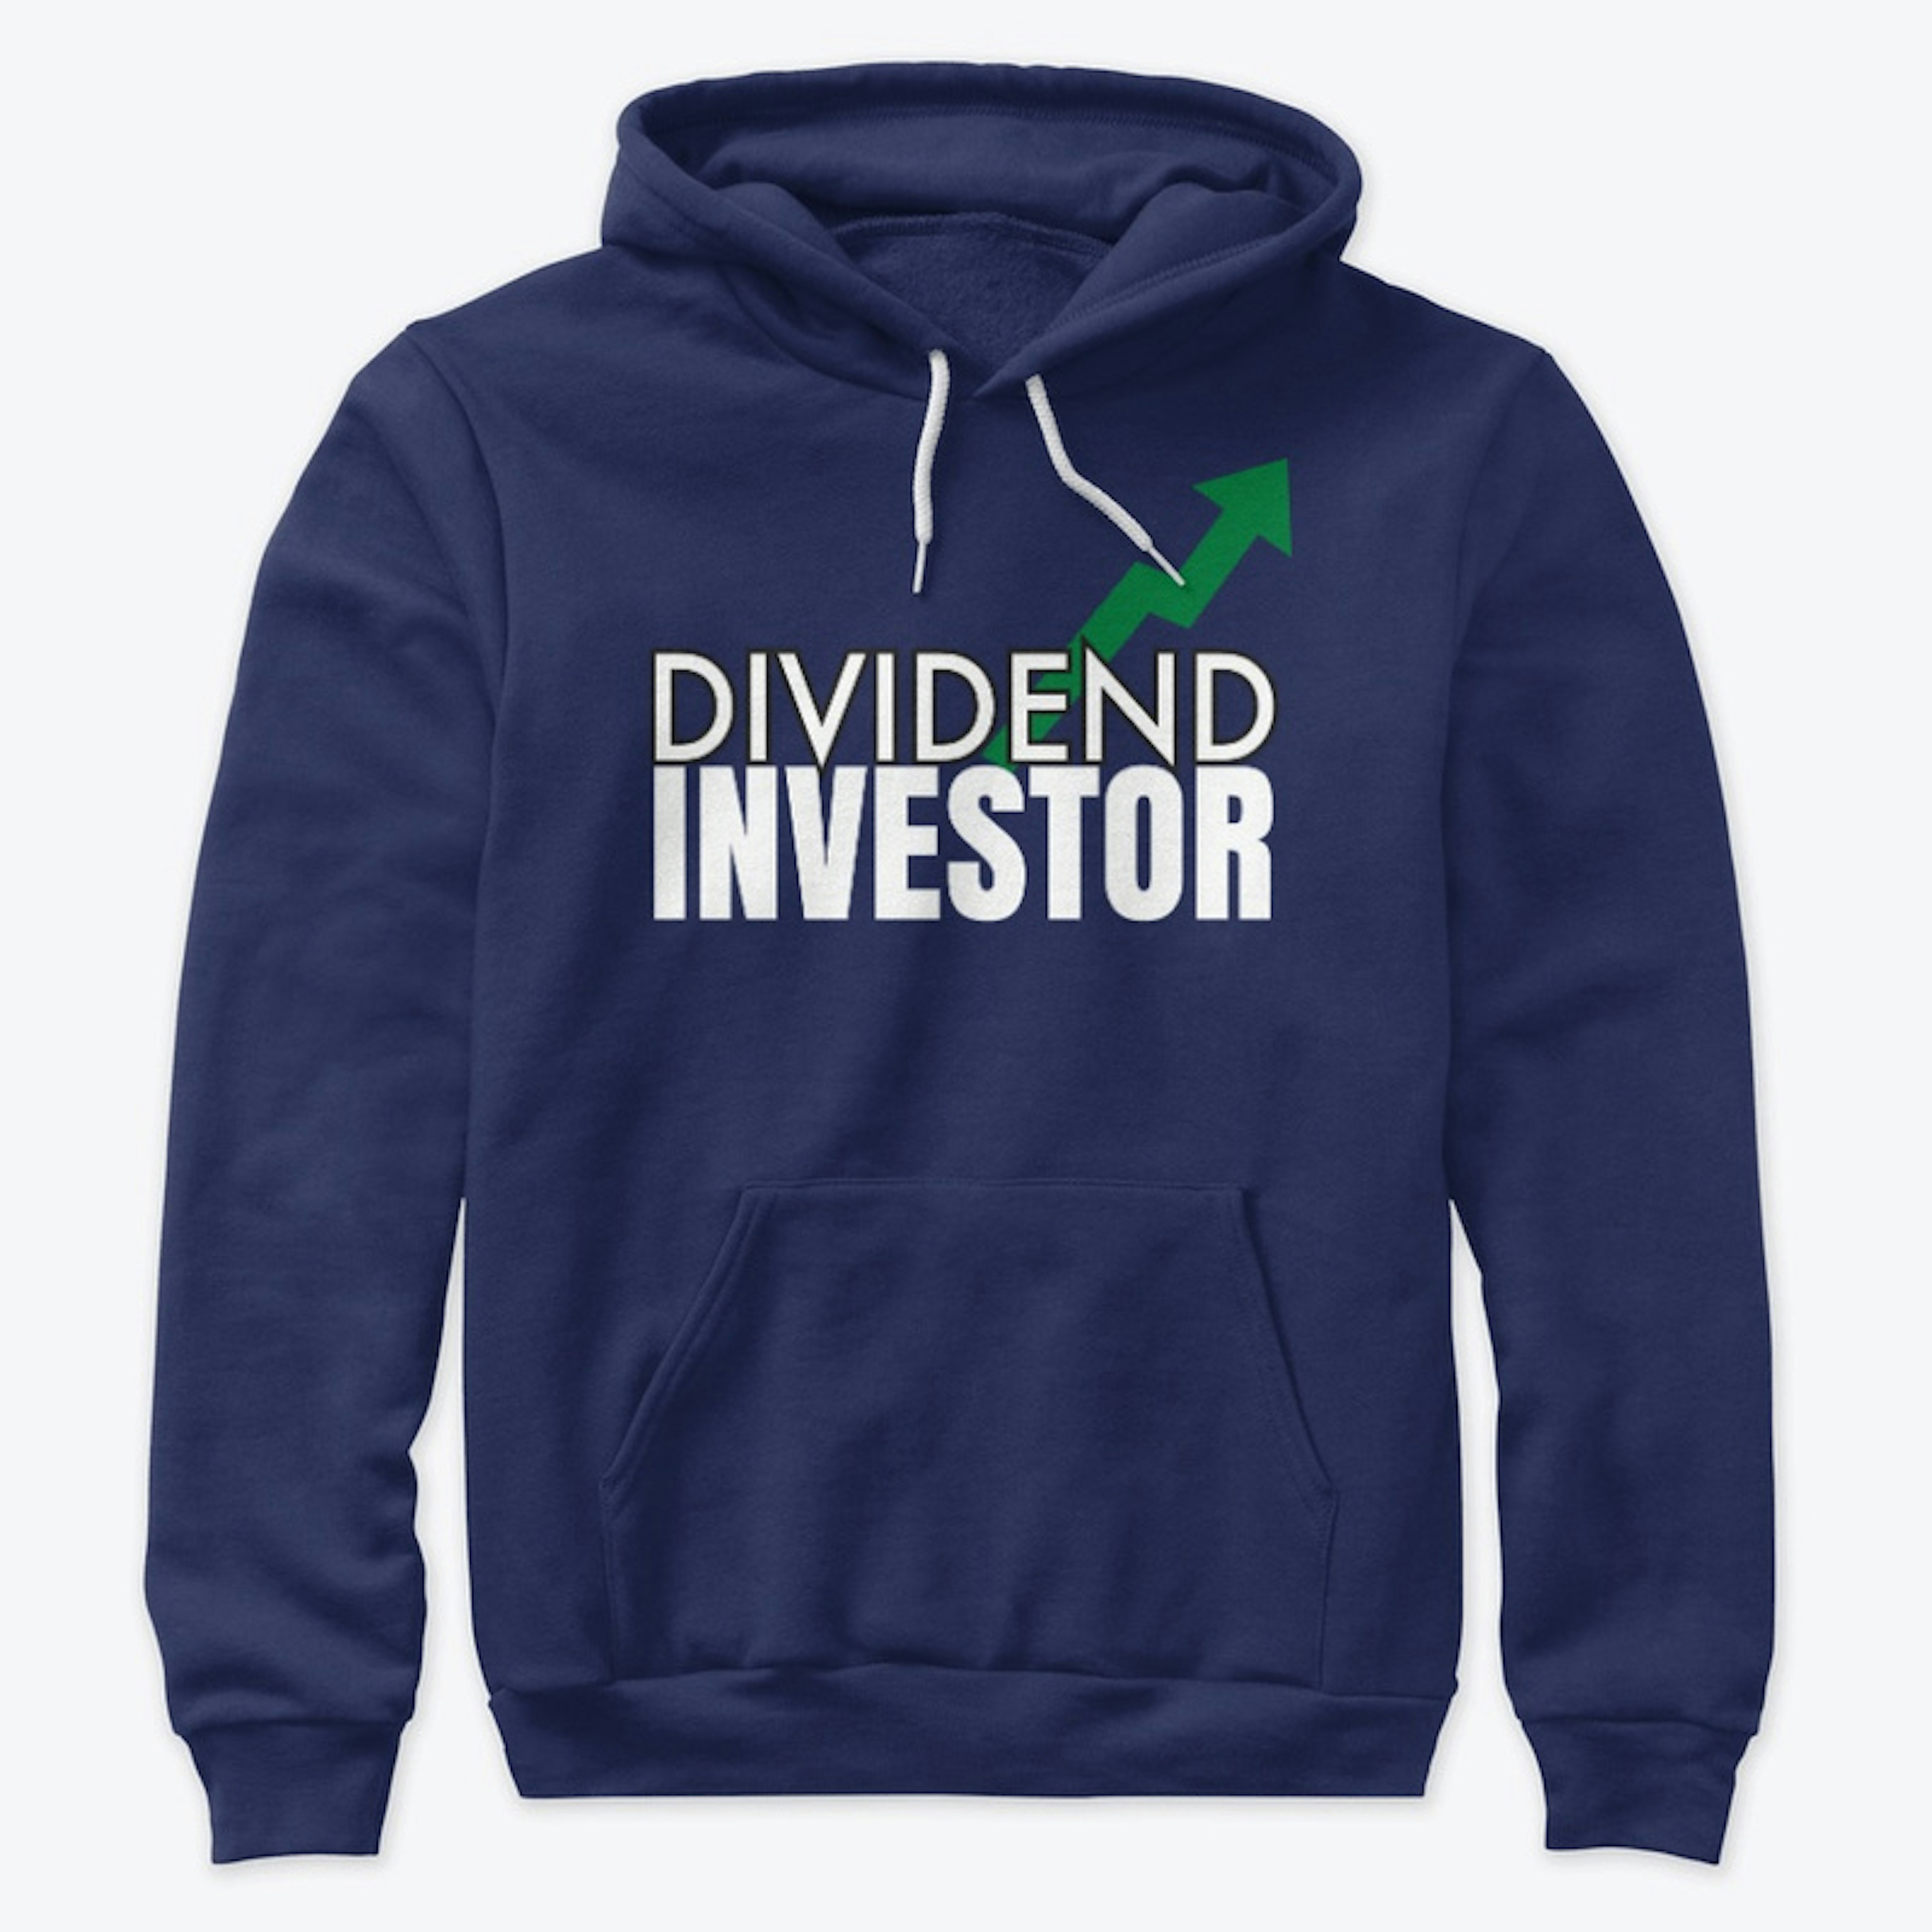 Dividend Investor (Black/Navy Hoodie)